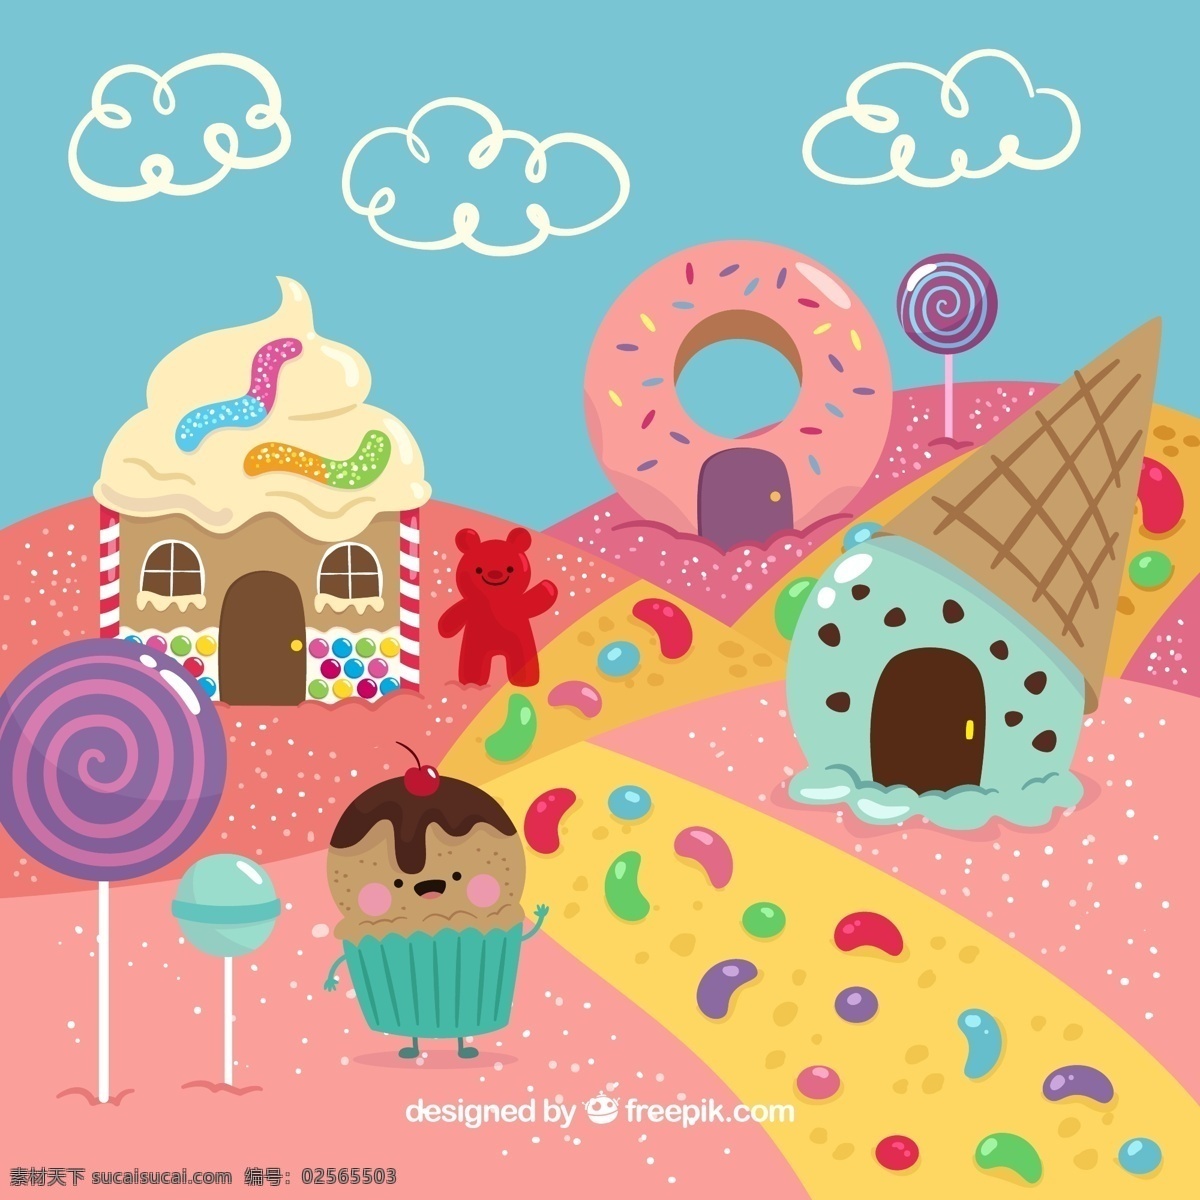 可爱 卡通 糖果 世界 云朵 小熊糖 冰淇淋 甜甜圈 棒棒糖 生活用品 生活百科 餐饮美食